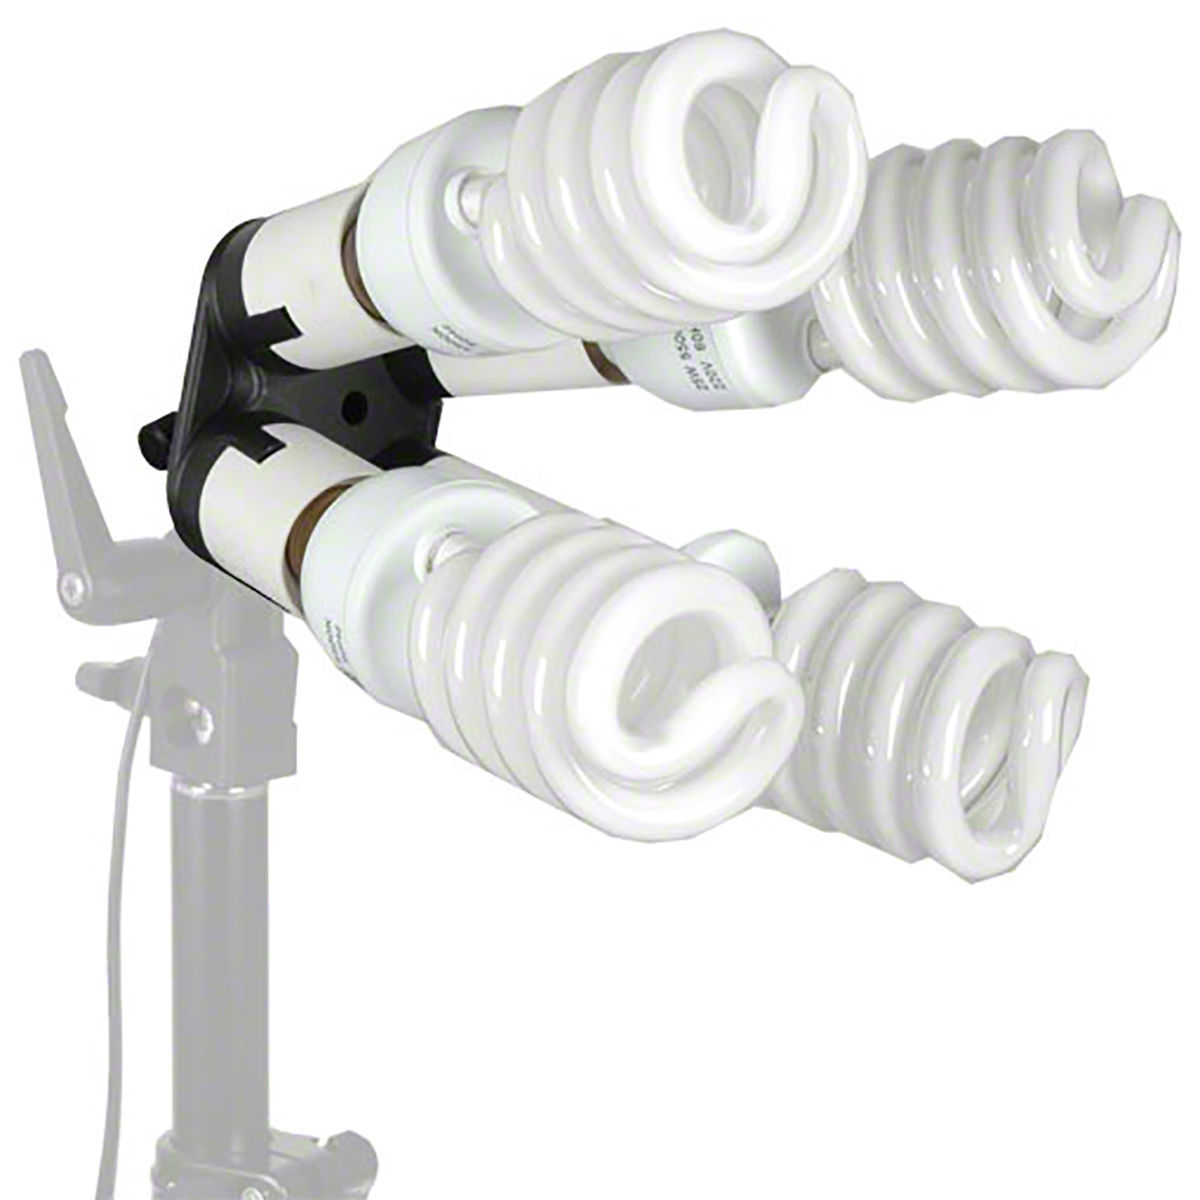 Walimex 4-fach Lampenhalterung mit 4 Tageslampen - Foto Leistenschneider